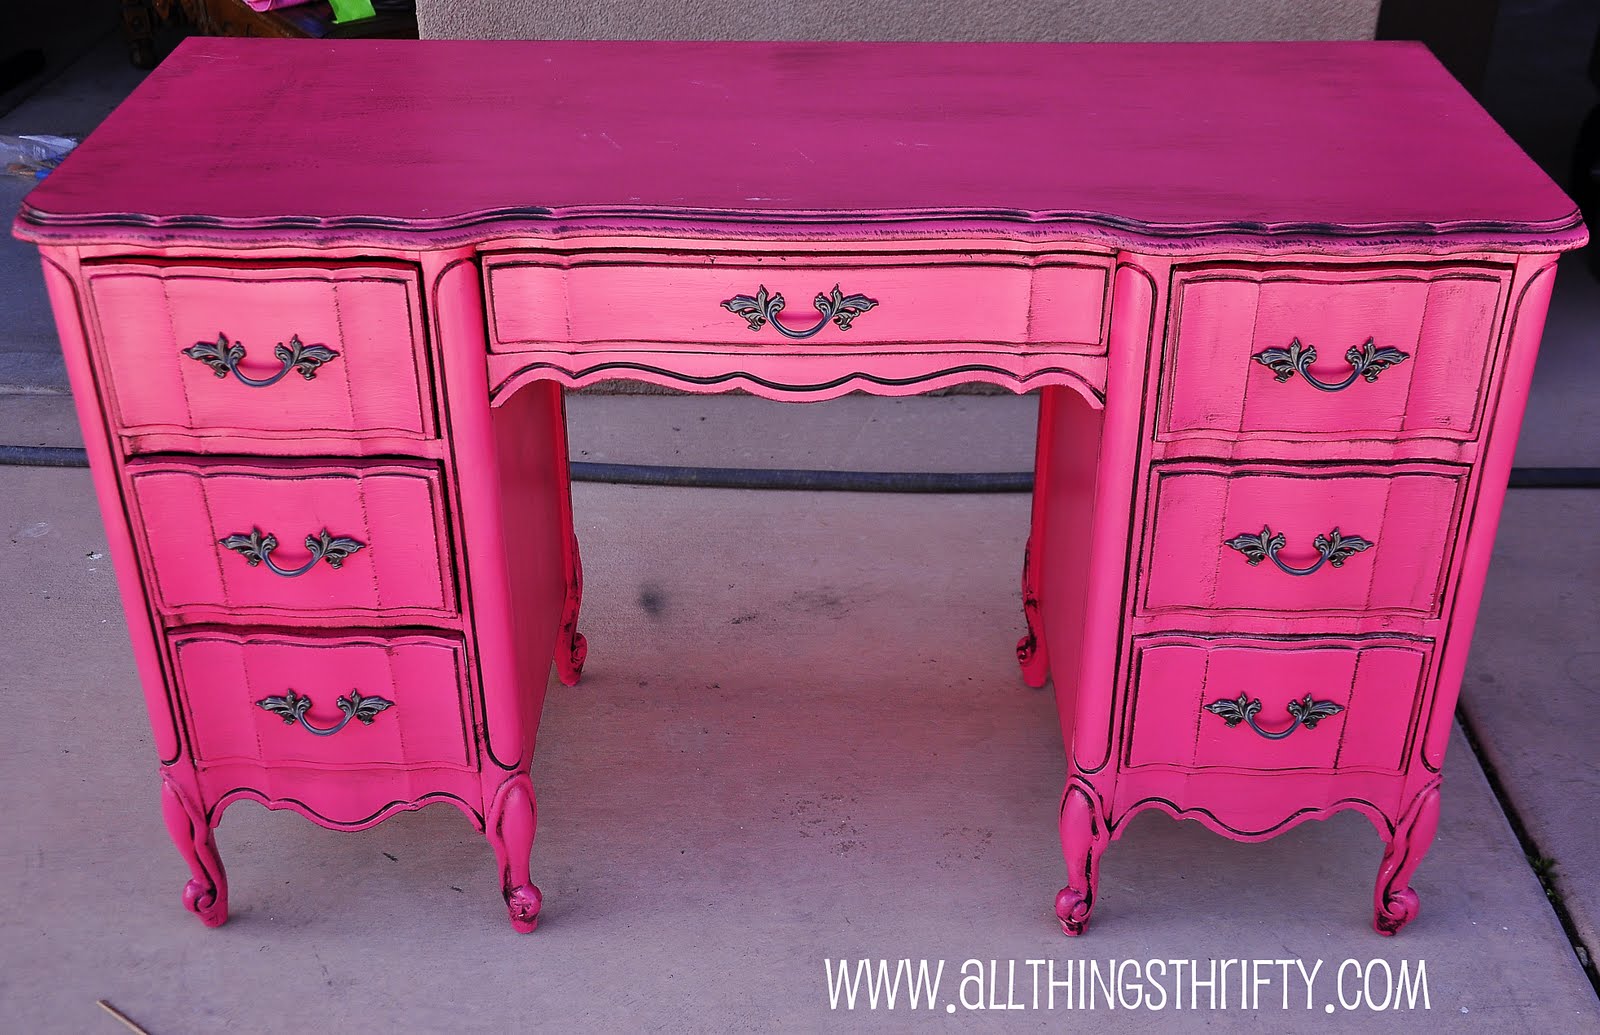 http://4.bp.blogspot.com/-LObGafQNZa8/TbBe8ENChMI/AAAAAAAAC-8/4UqtvodtHlk/s1600/pink+furniture.jpg